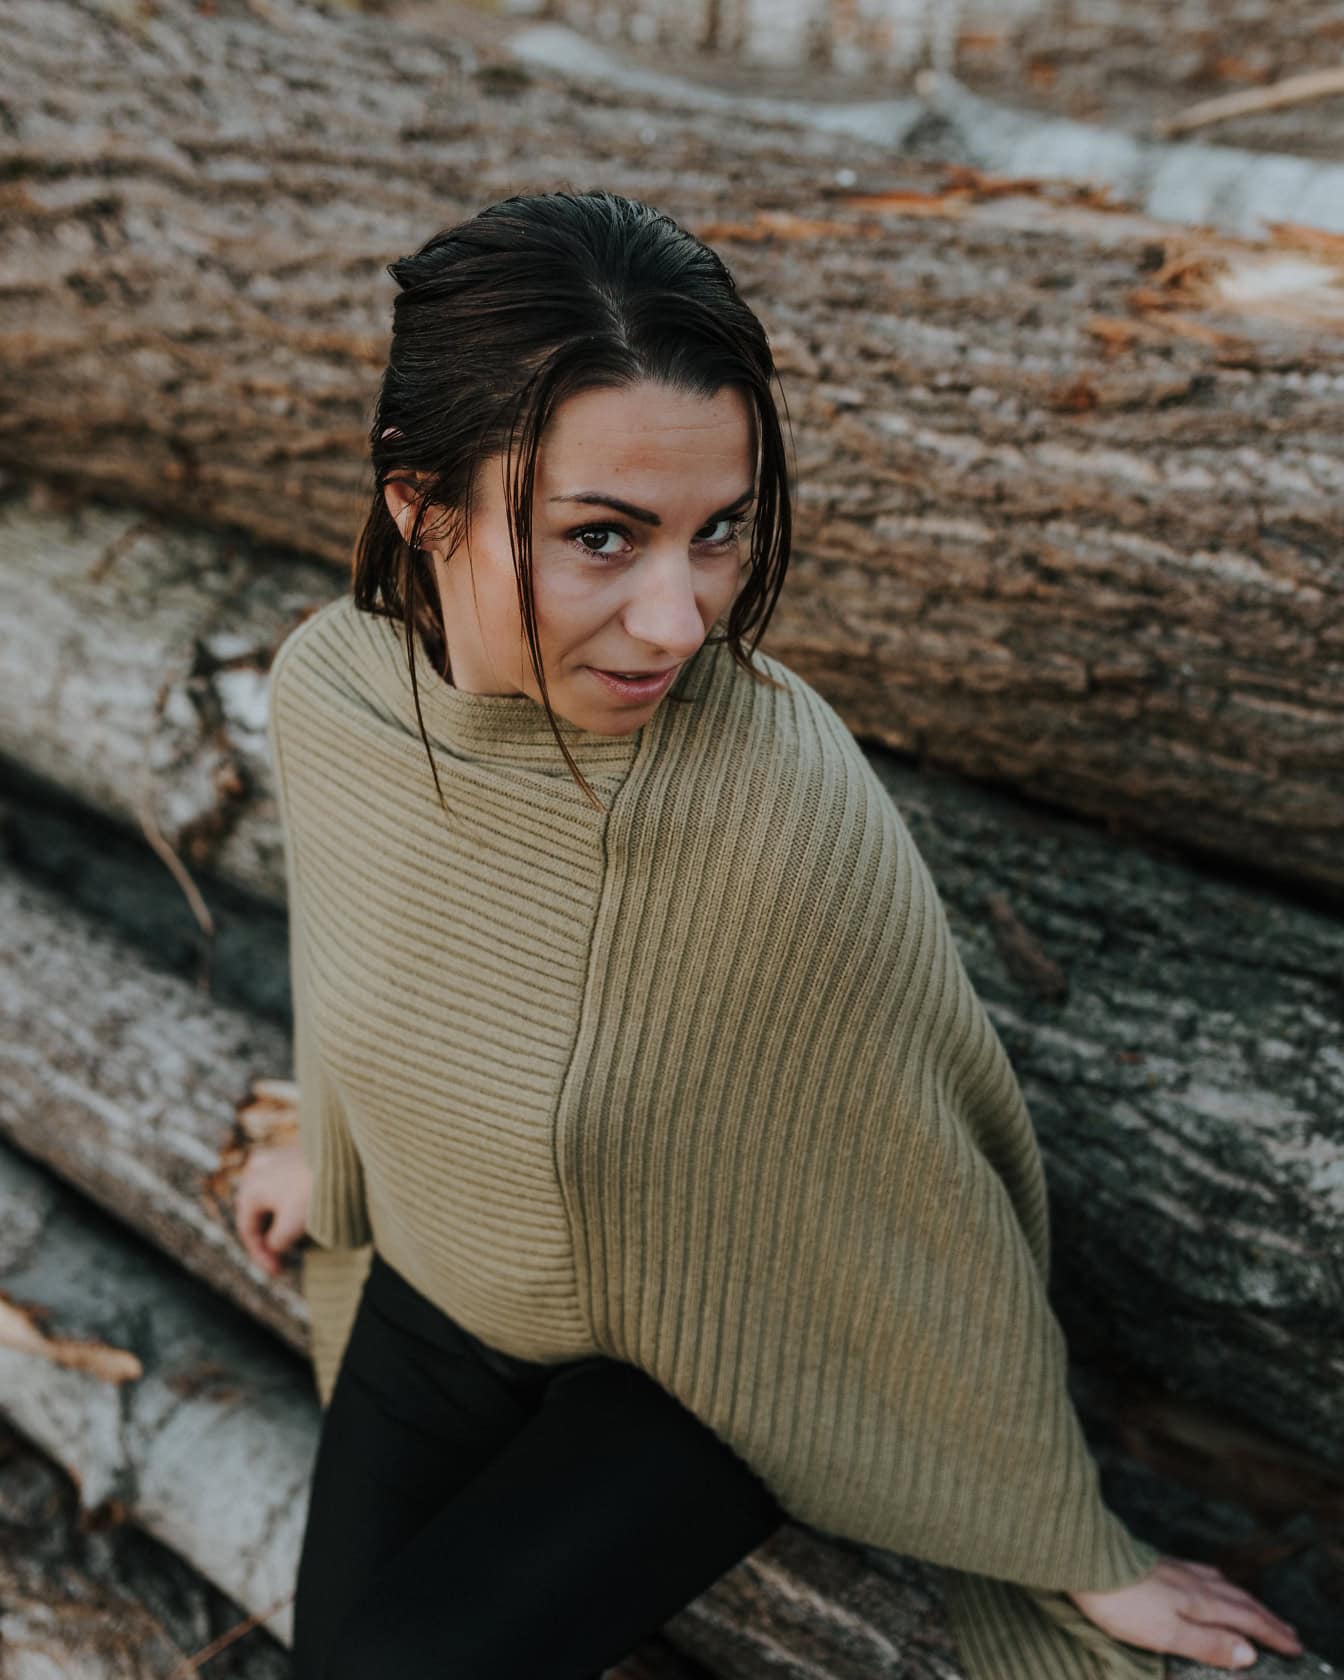 Retrato de una guapa morena con un suéter tejido a mano mientras posa apoyada en troncos